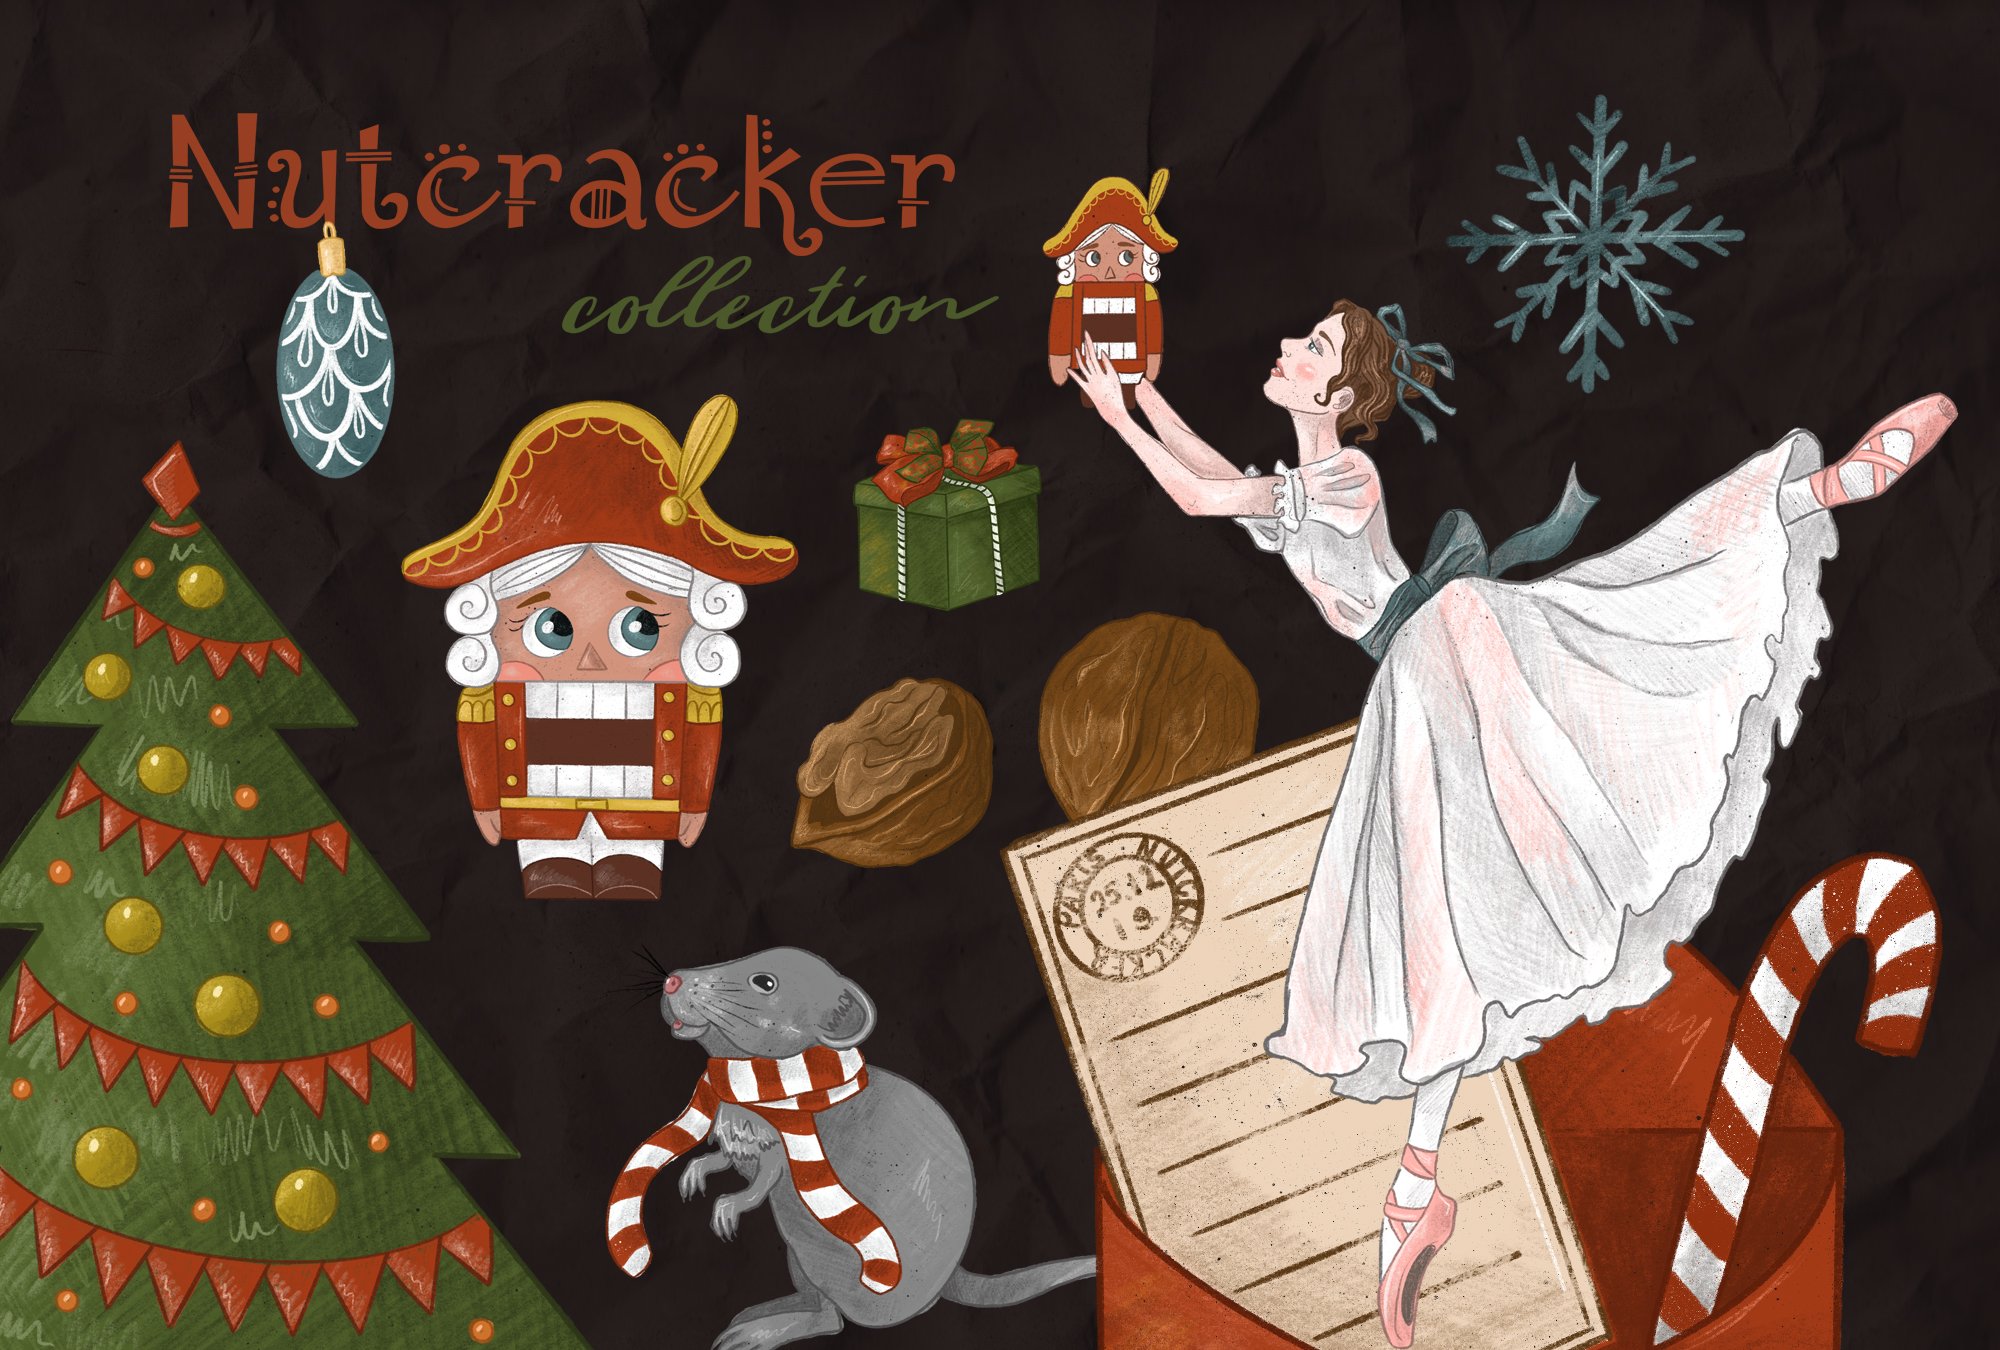 Nutcracker collection cover image.